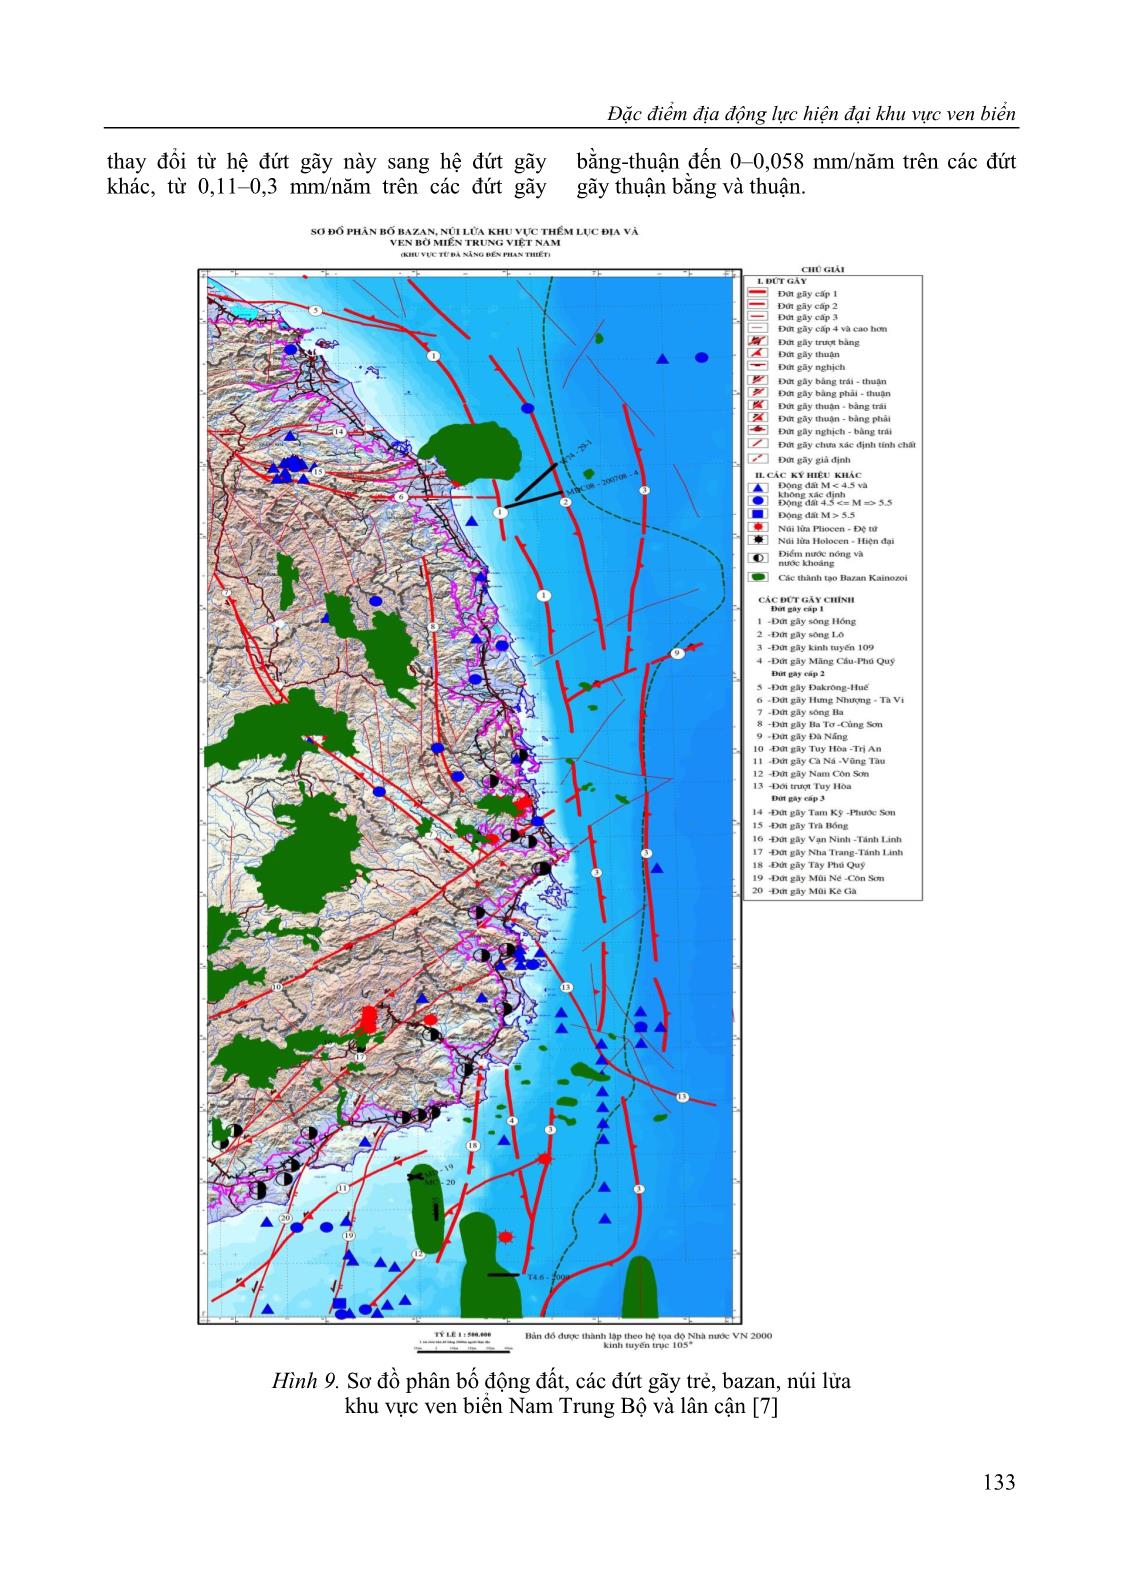 Đặc điểm địa động lực hiện đại khu vực ven biển Nam Trung Bộ và mối liên quan với các tai biến địa chất trang 9